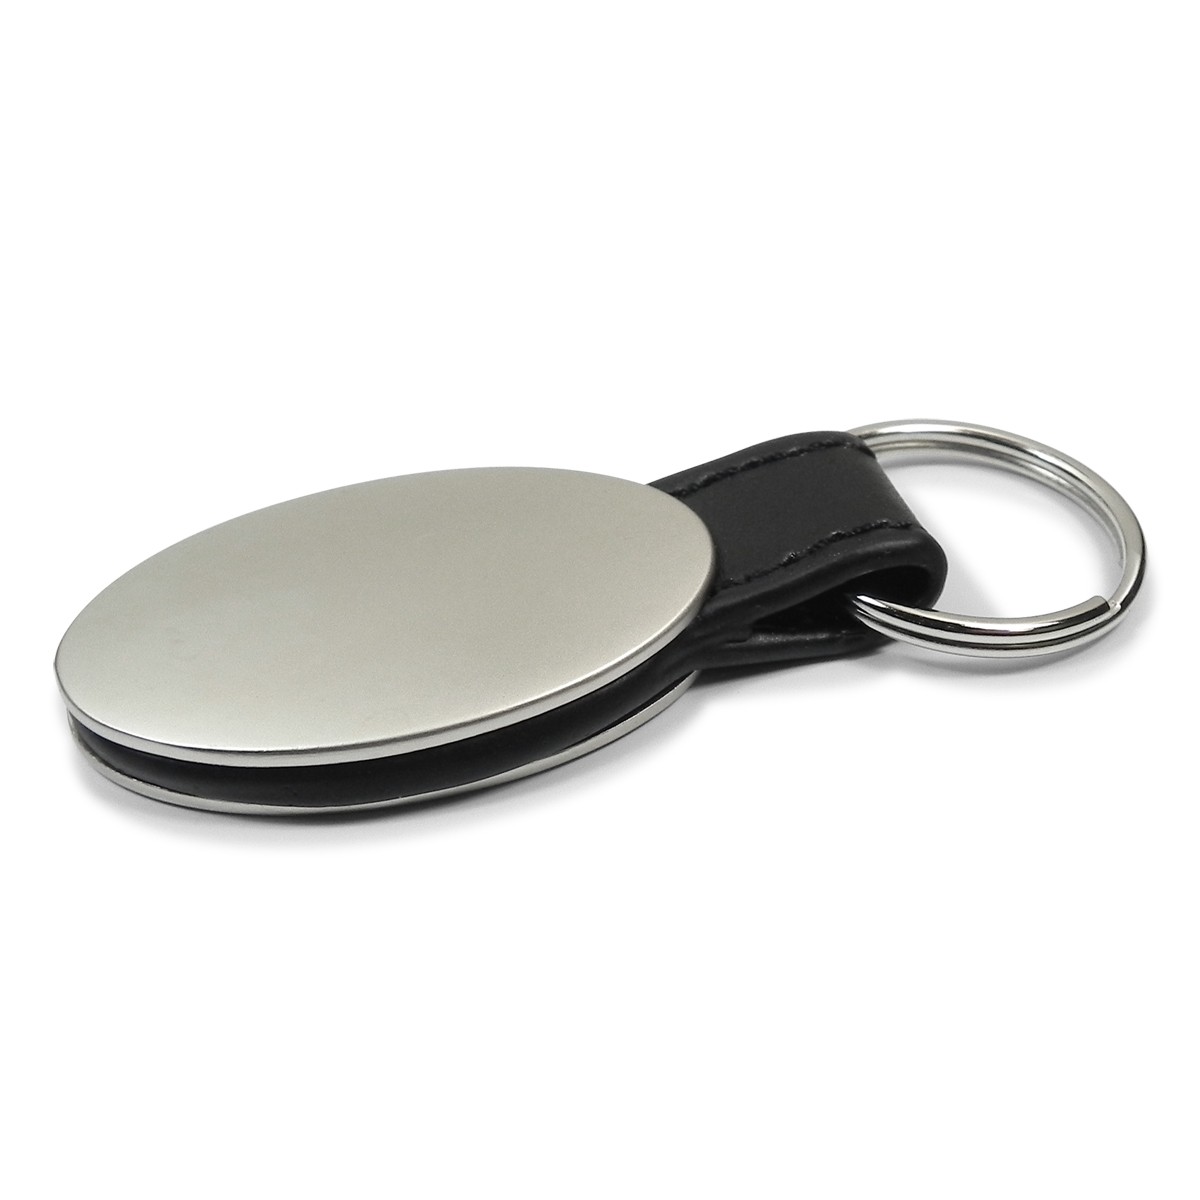 Eleganter Metall Schlüsselanhänger mit Mazda Modell Gravur in  Geschenkverpackung. - Autohaus Prange Online Shop